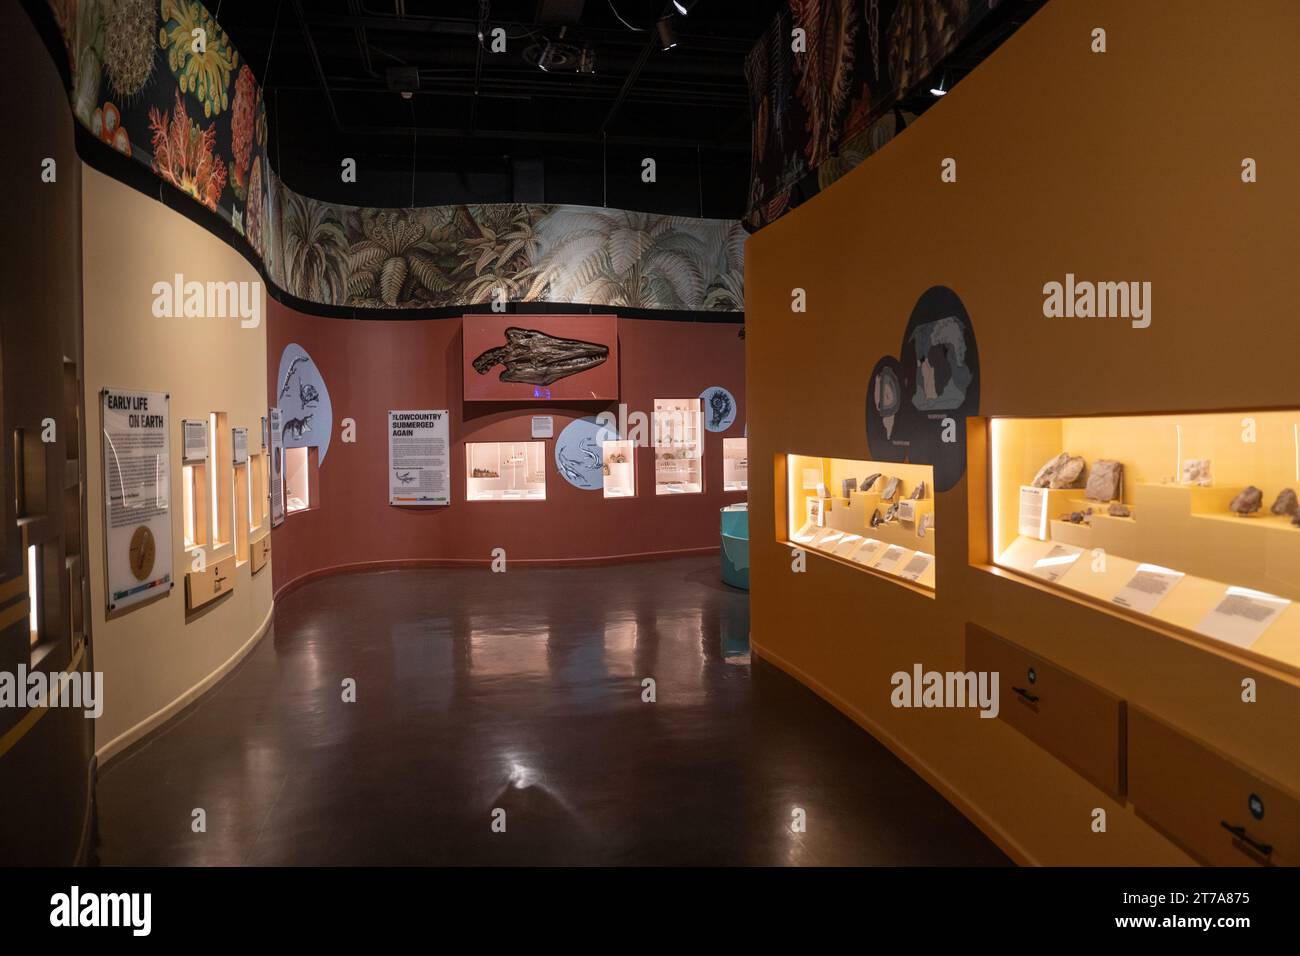 Das Charleston Museum, Amerikas erstes Museum in Charleston South Carolina Stockfoto